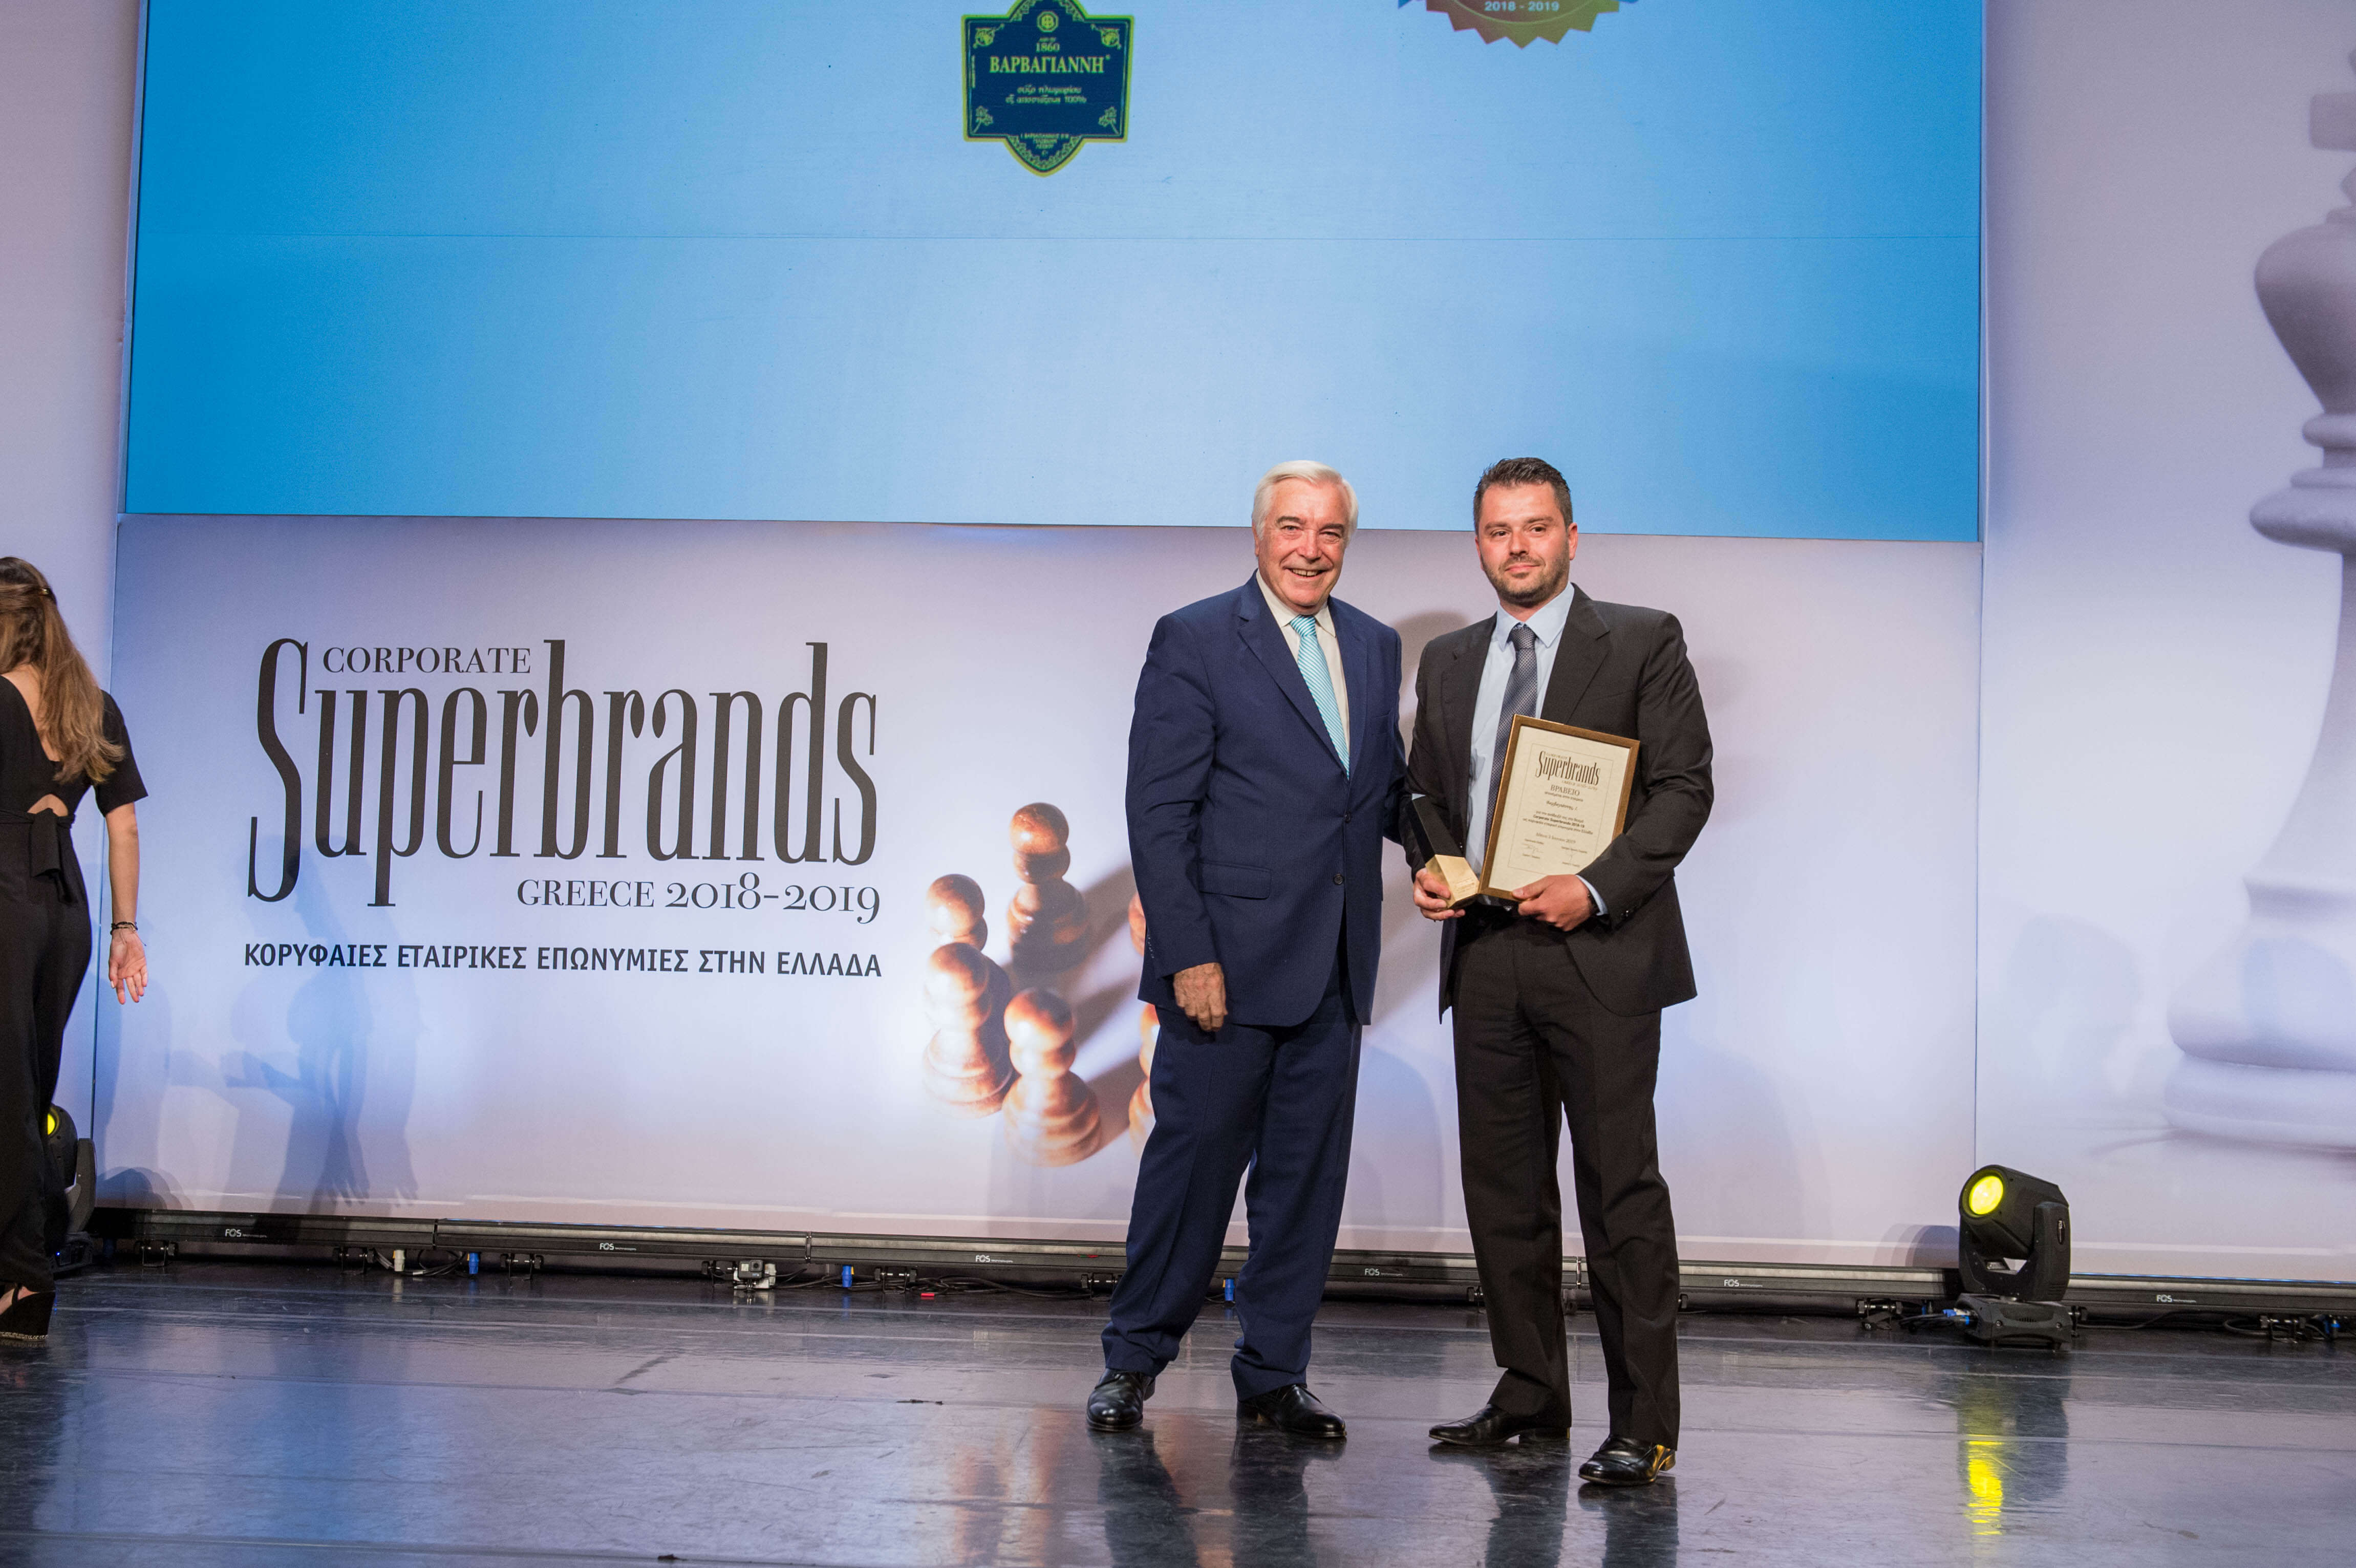 Το Ούζο Βαρβαγιάννη ξεχώρισε ως Κορυφαία Εταιρική Επωνυμία στην Ελλάδα στο διαγωνισμό των Superbrands